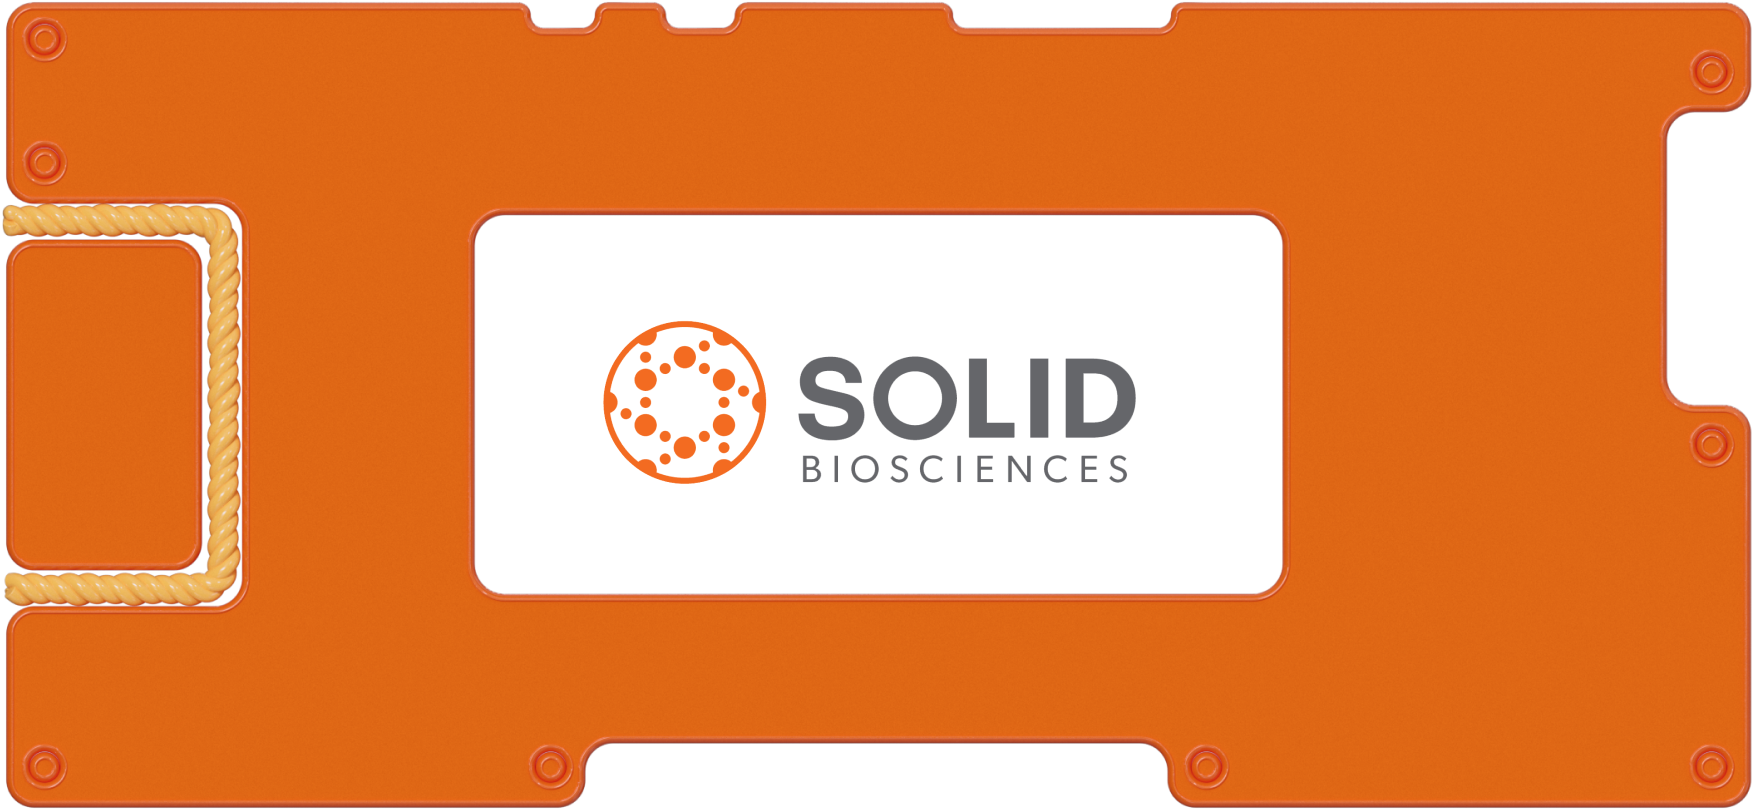 Обзор Solid Biosciences: перспективная биотехнологическая компания